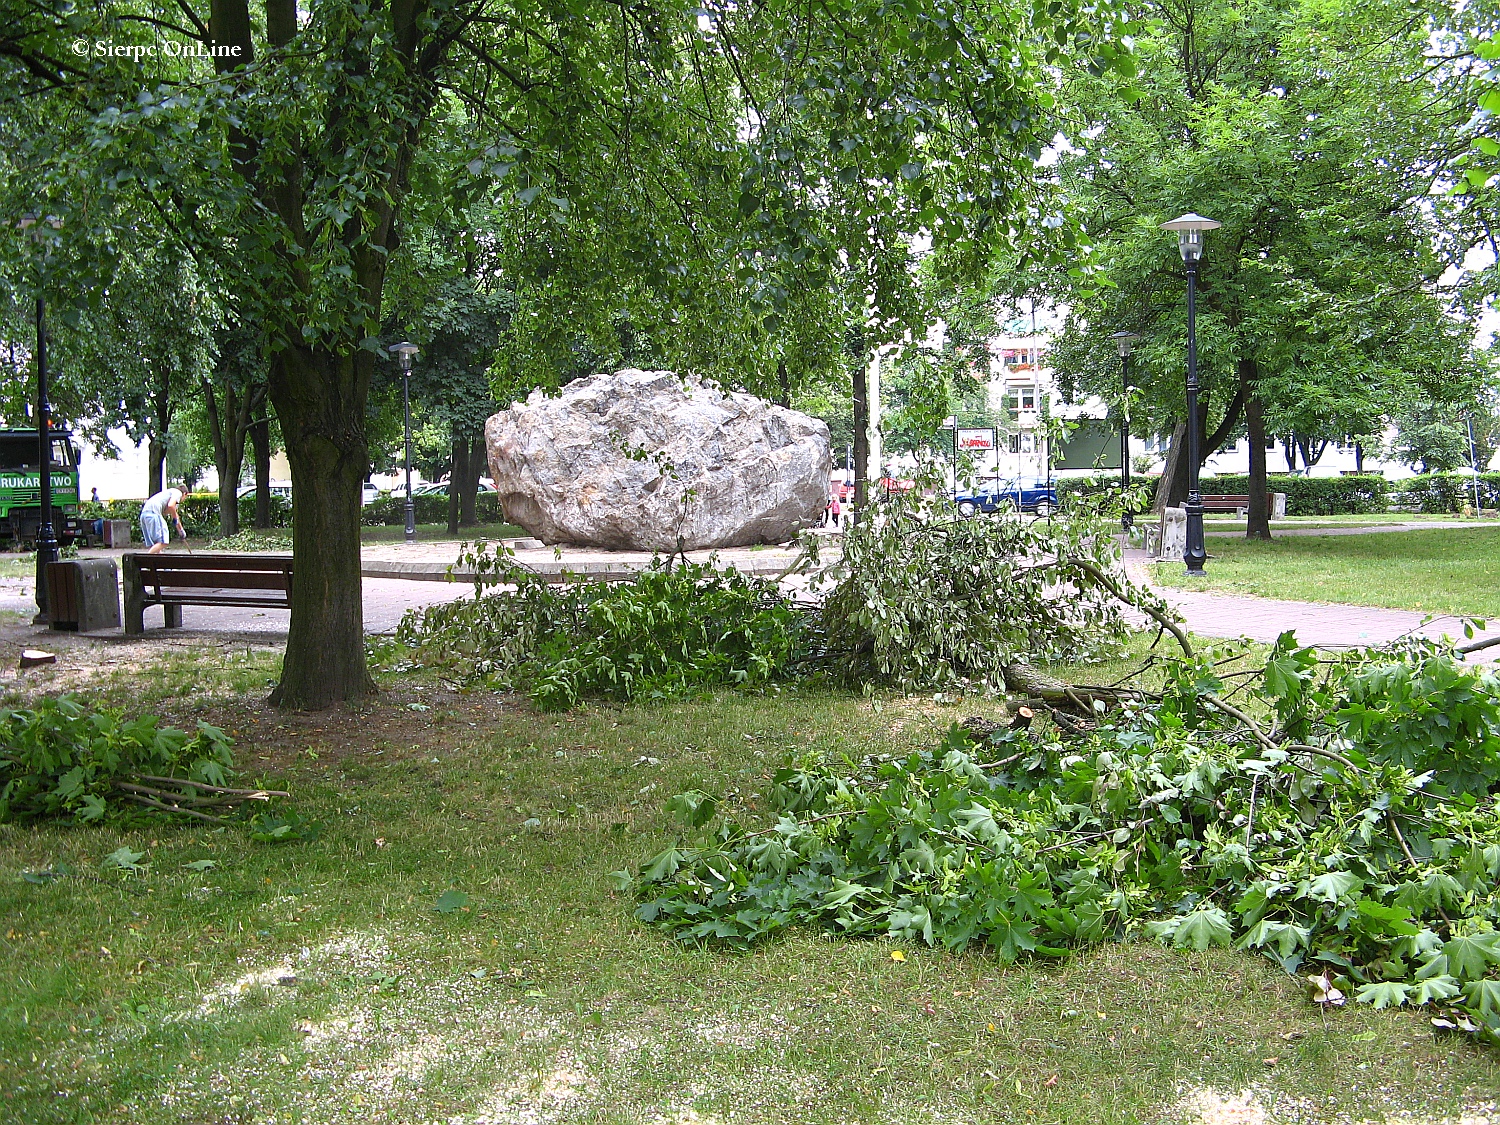 Wycinka drzew przed wielk modernizacj w Parku im. Solidarnoci, 26.06.2015 r.